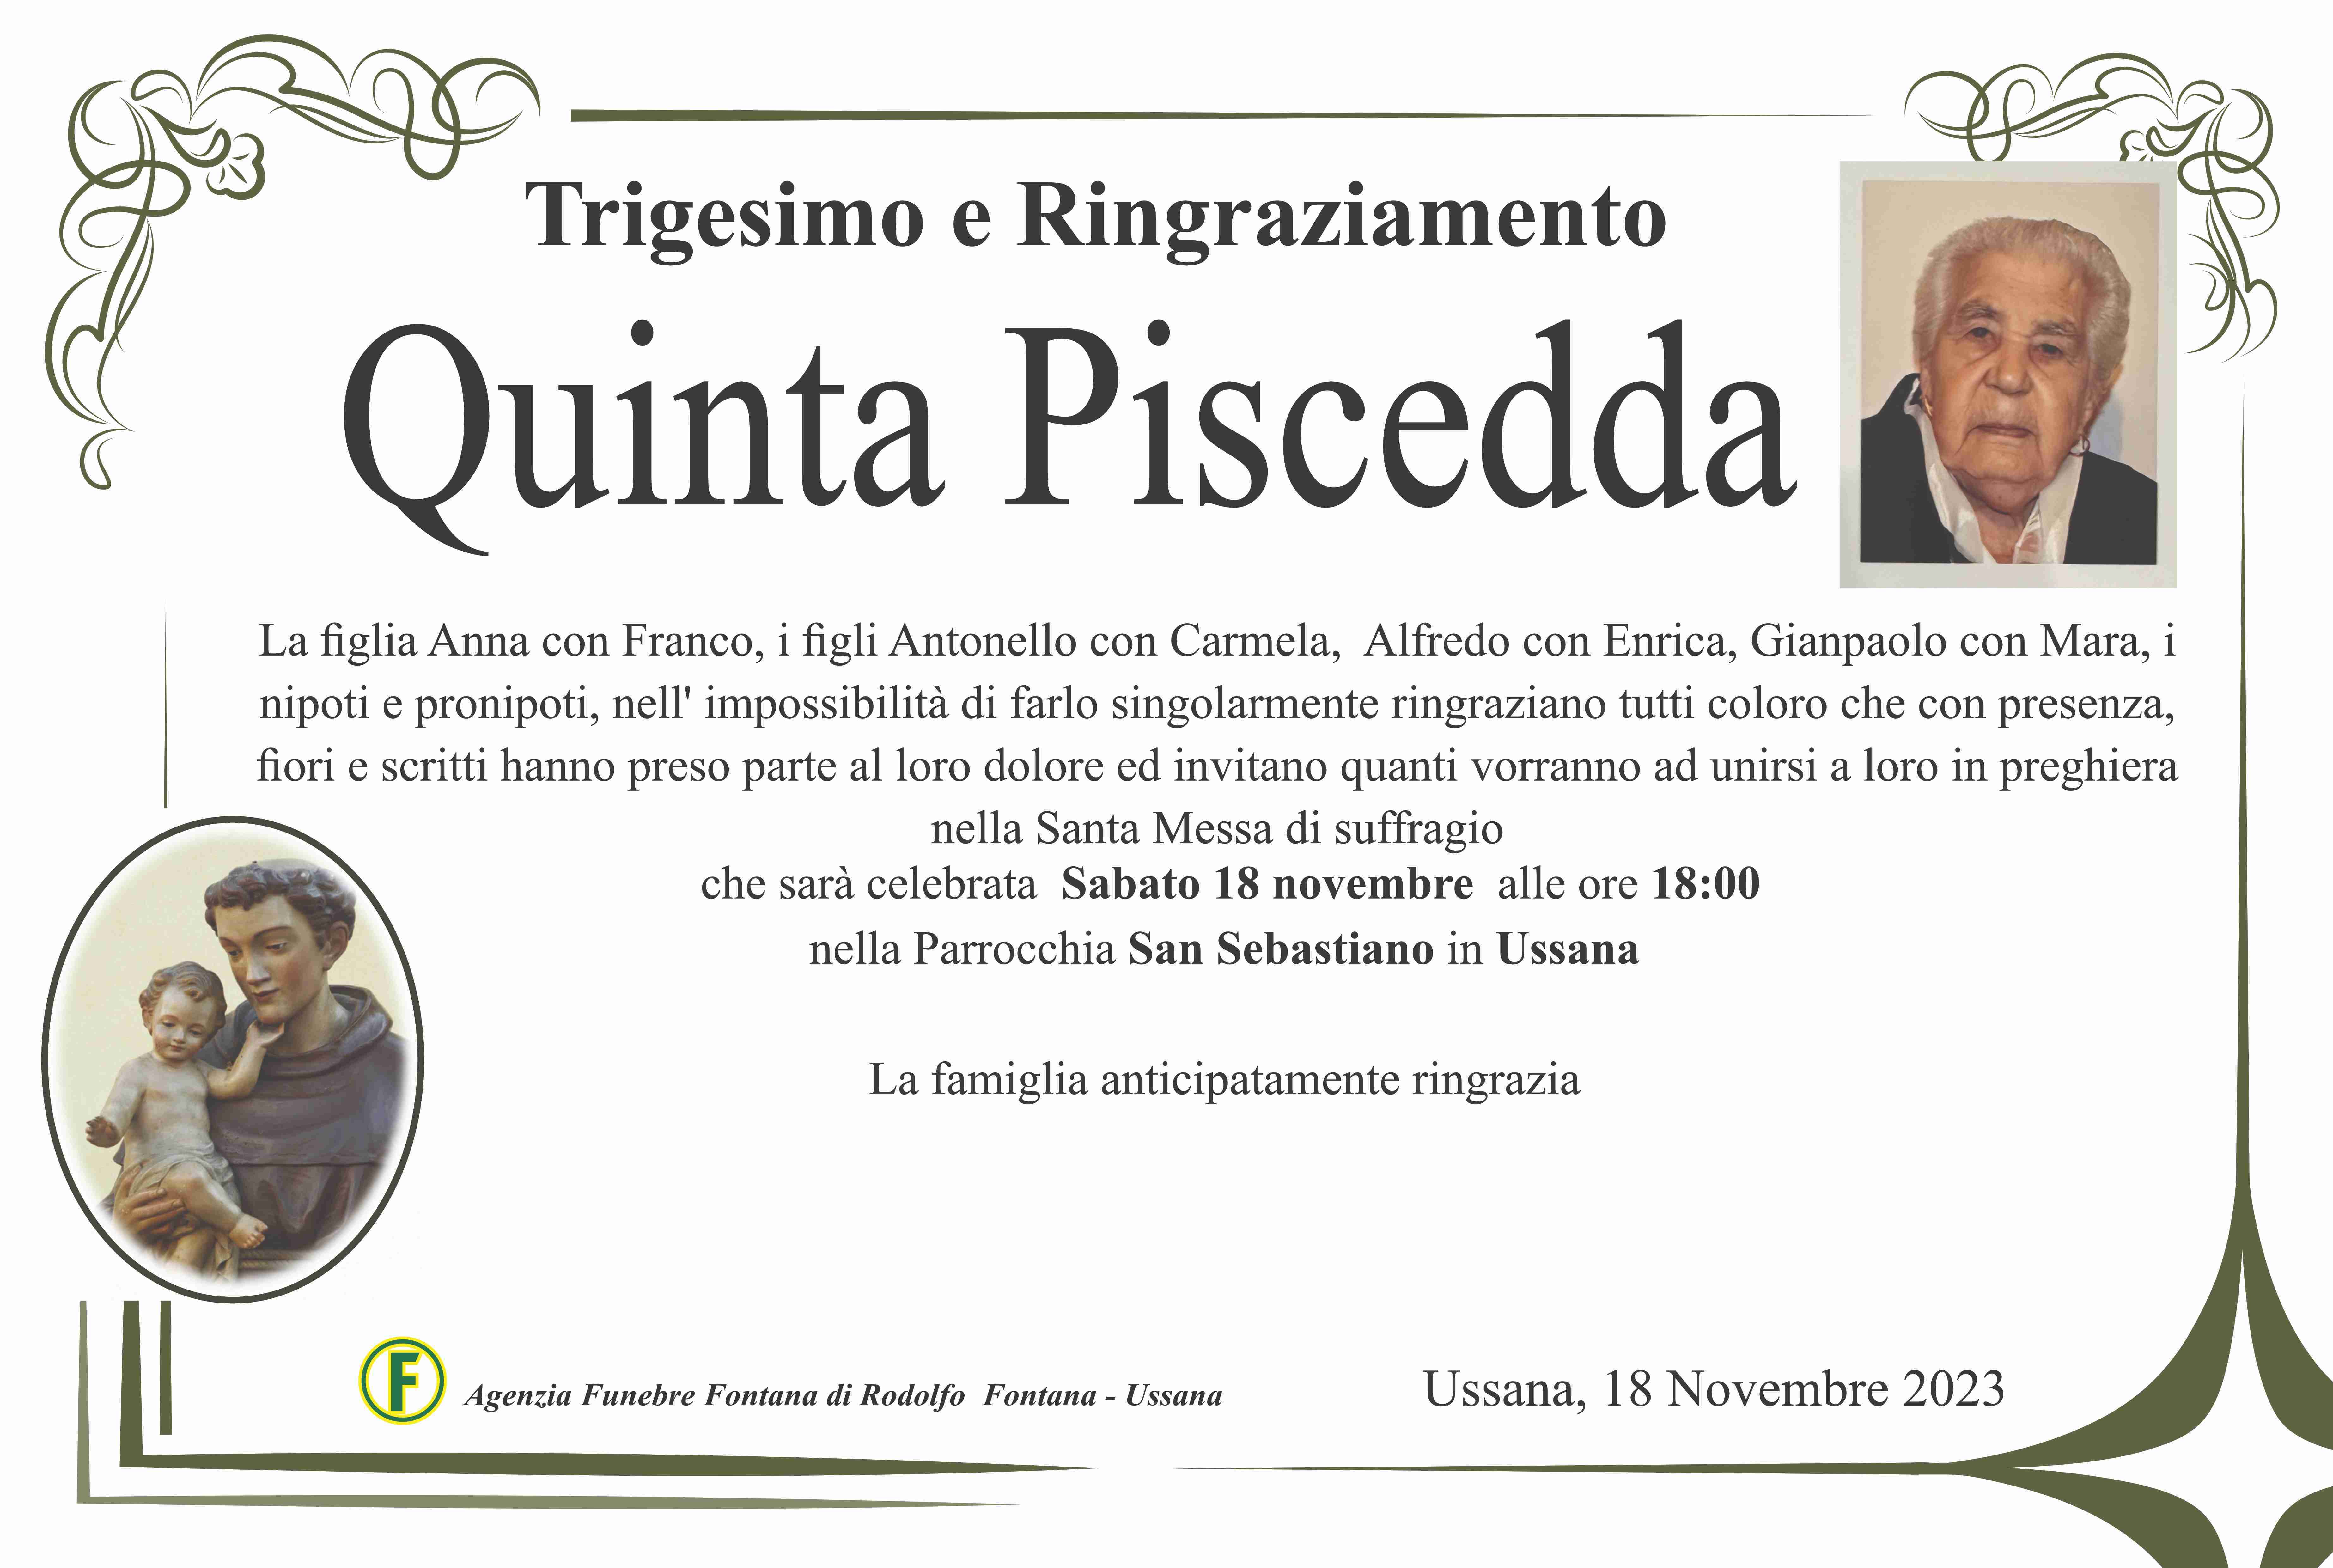 Quinta Piscedda